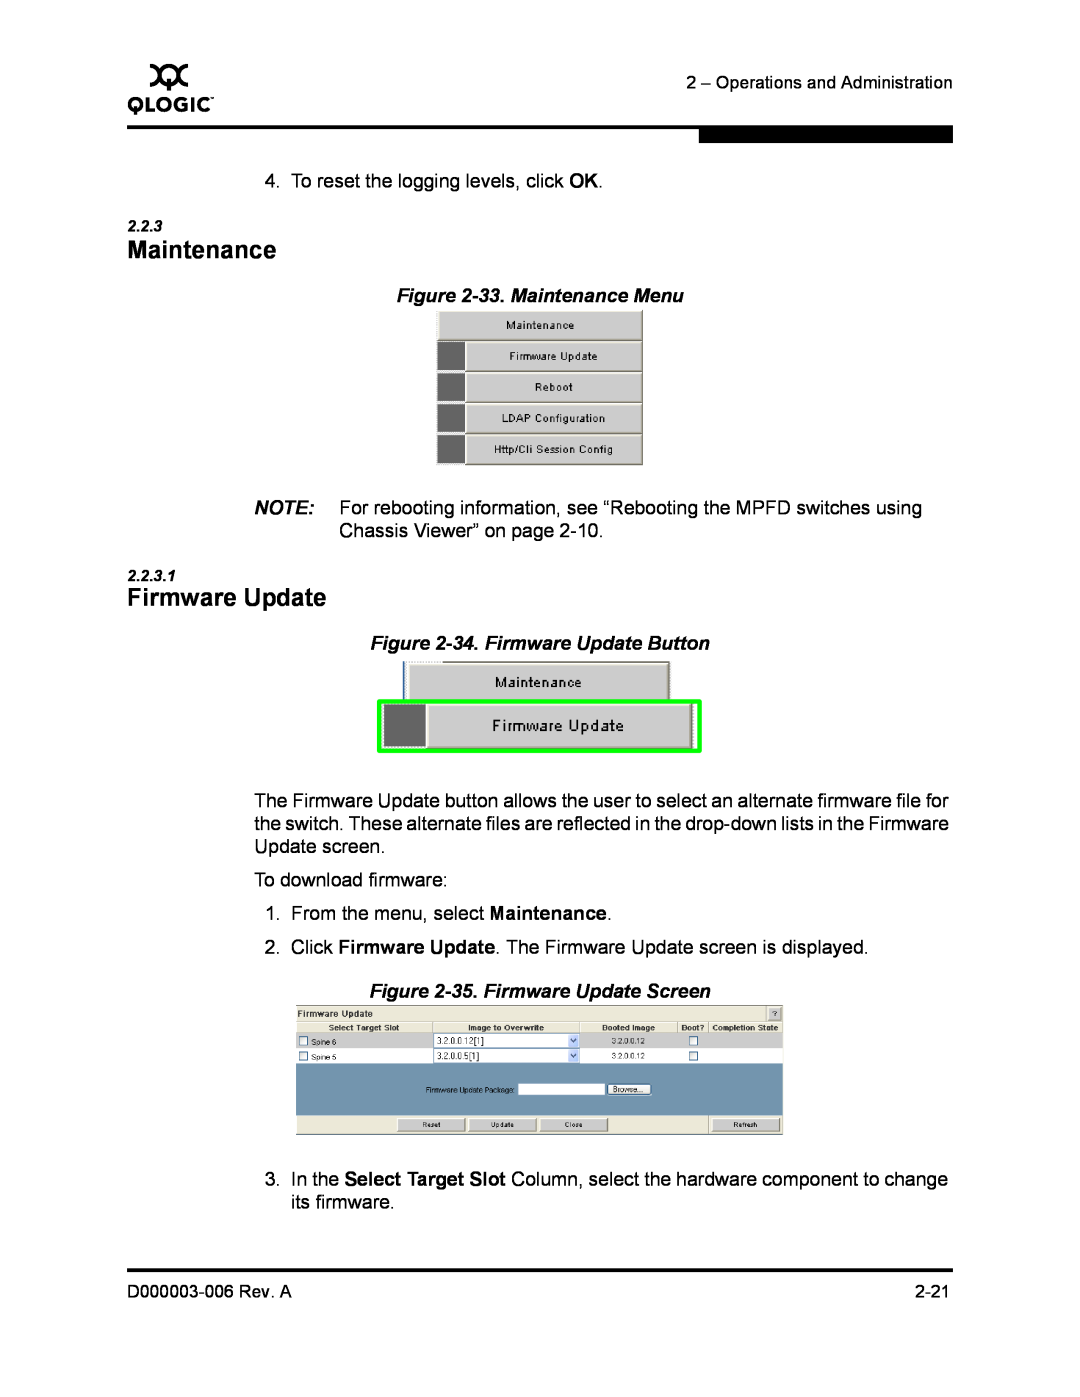 Q-Logic 9000 manual 33. Maintenance Menu, 34. Firmware Update Button, 35. Firmware Update Screen 